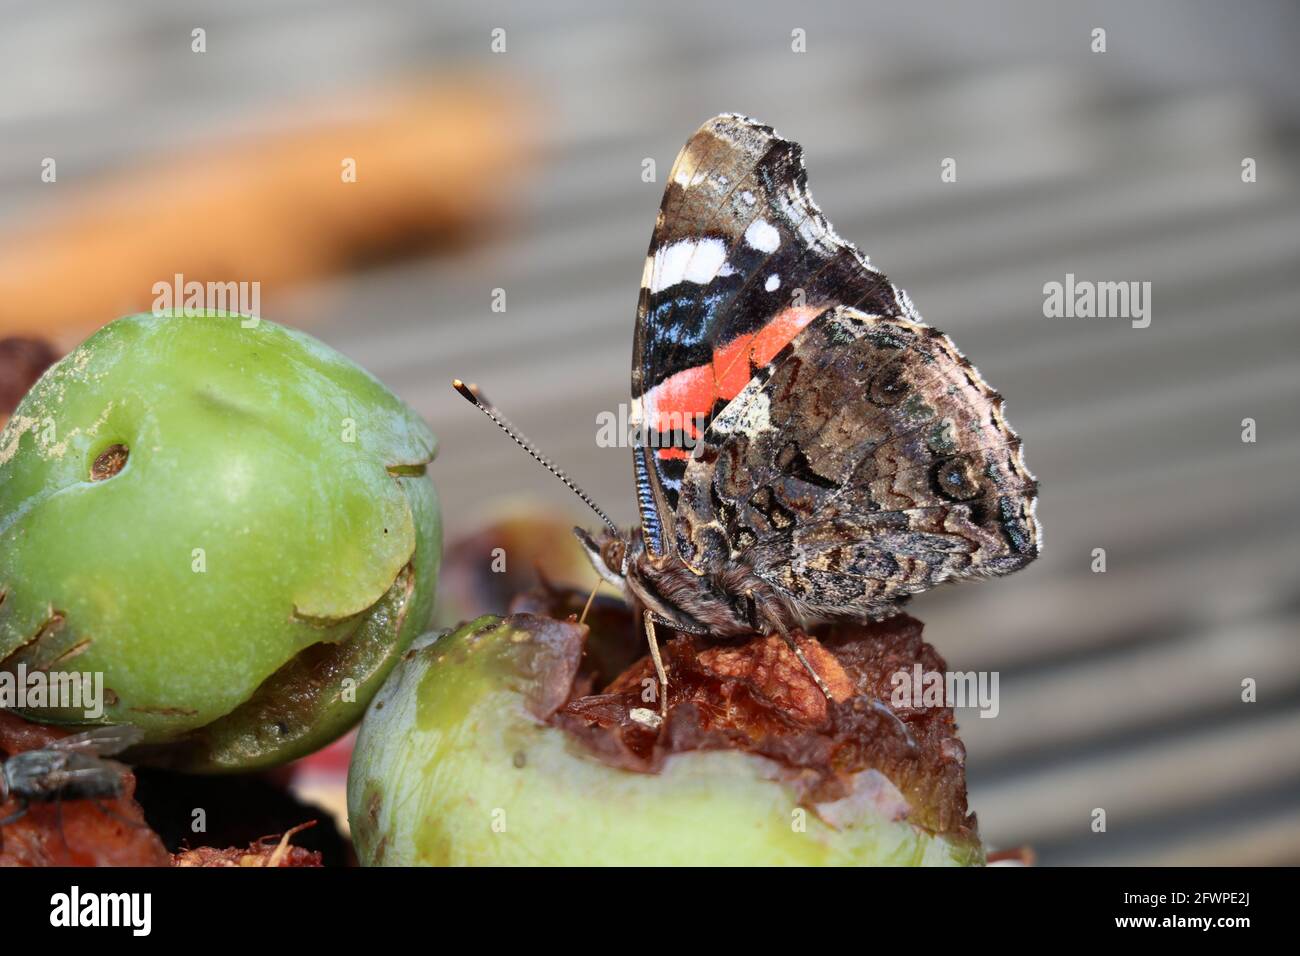 vue ventrale du papillon amiral rouge se nourrissant de fruits pourris Banque D'Images